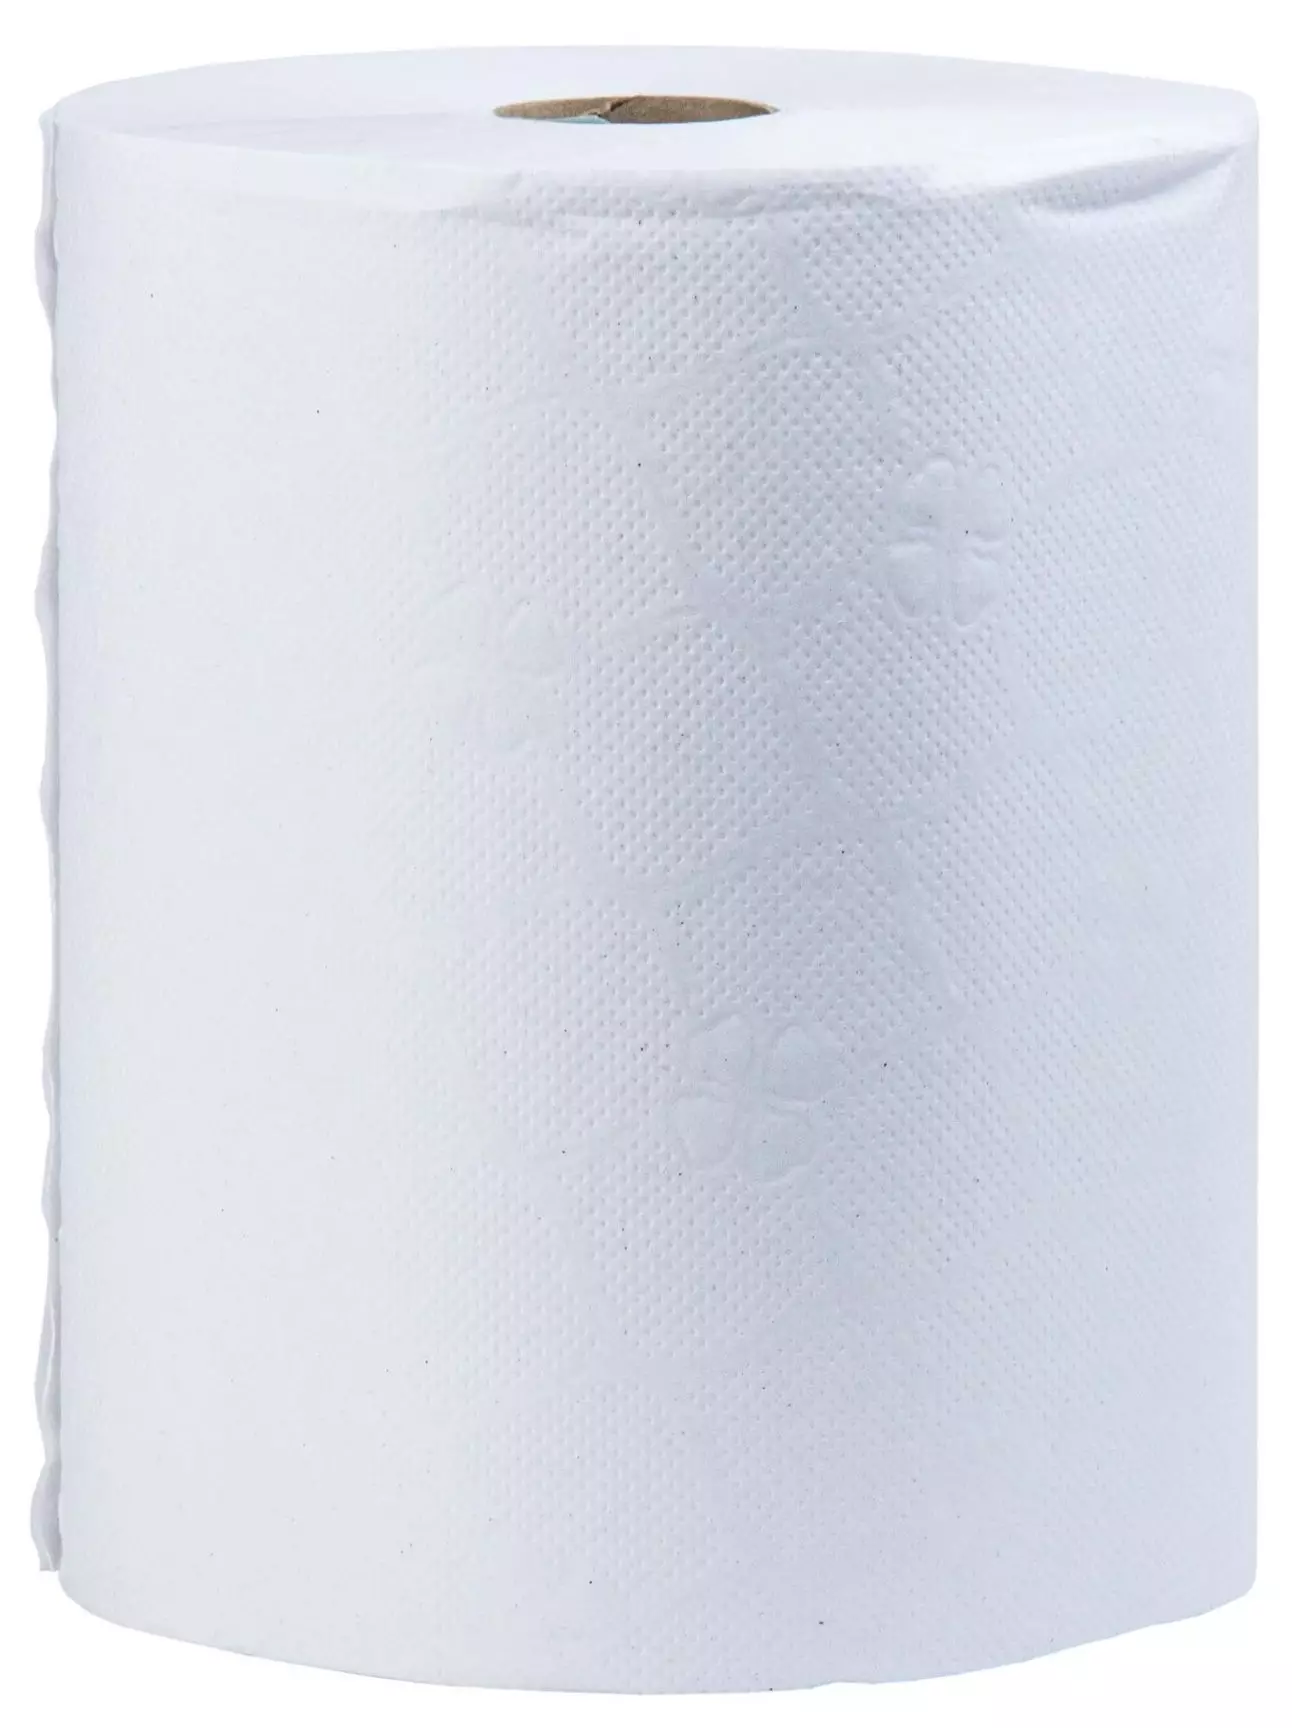 Бумажные полотенца в рулоне 2сл 130м "Plushe" (Tork) (6шт) 